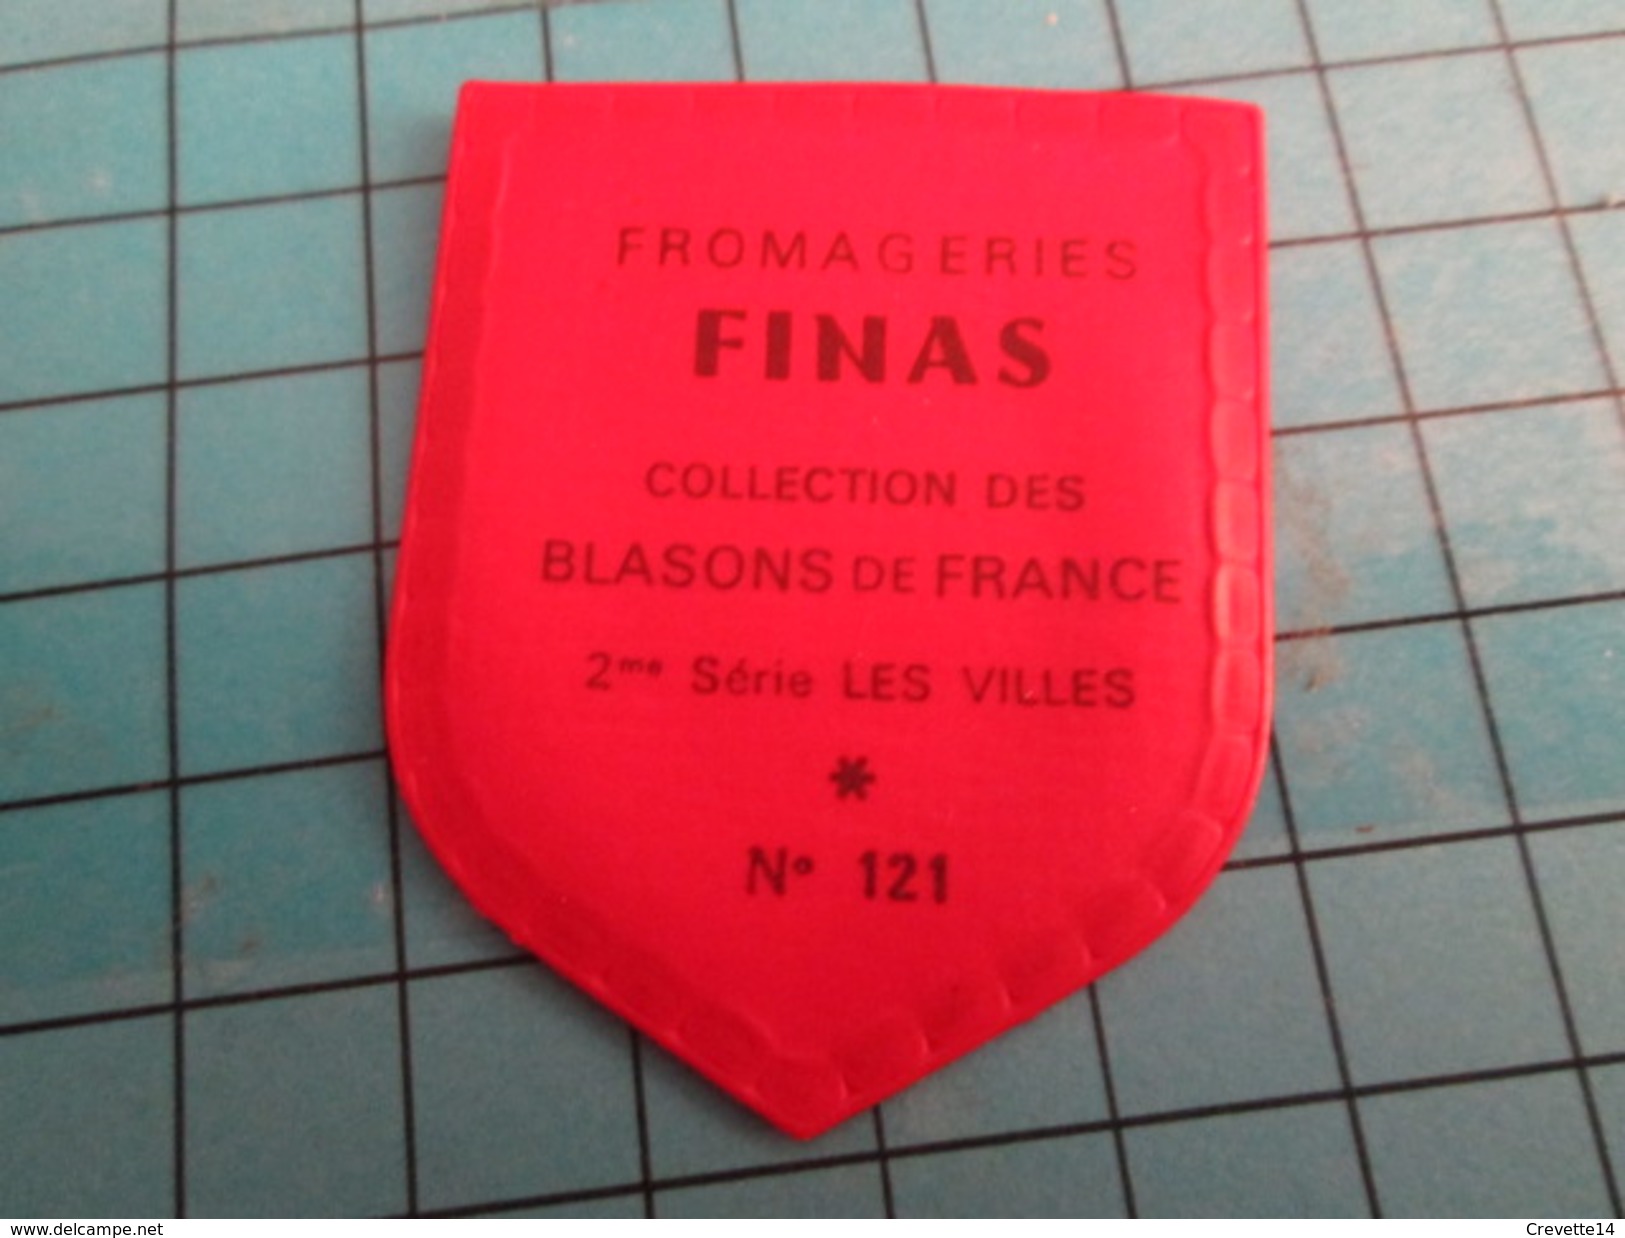 PUB 615 Ecusson Publicitaire Années 60  FROMAGERIE FINAS / BLASONS DE FRANCE LES VILLES N°121 METZ - Magnets